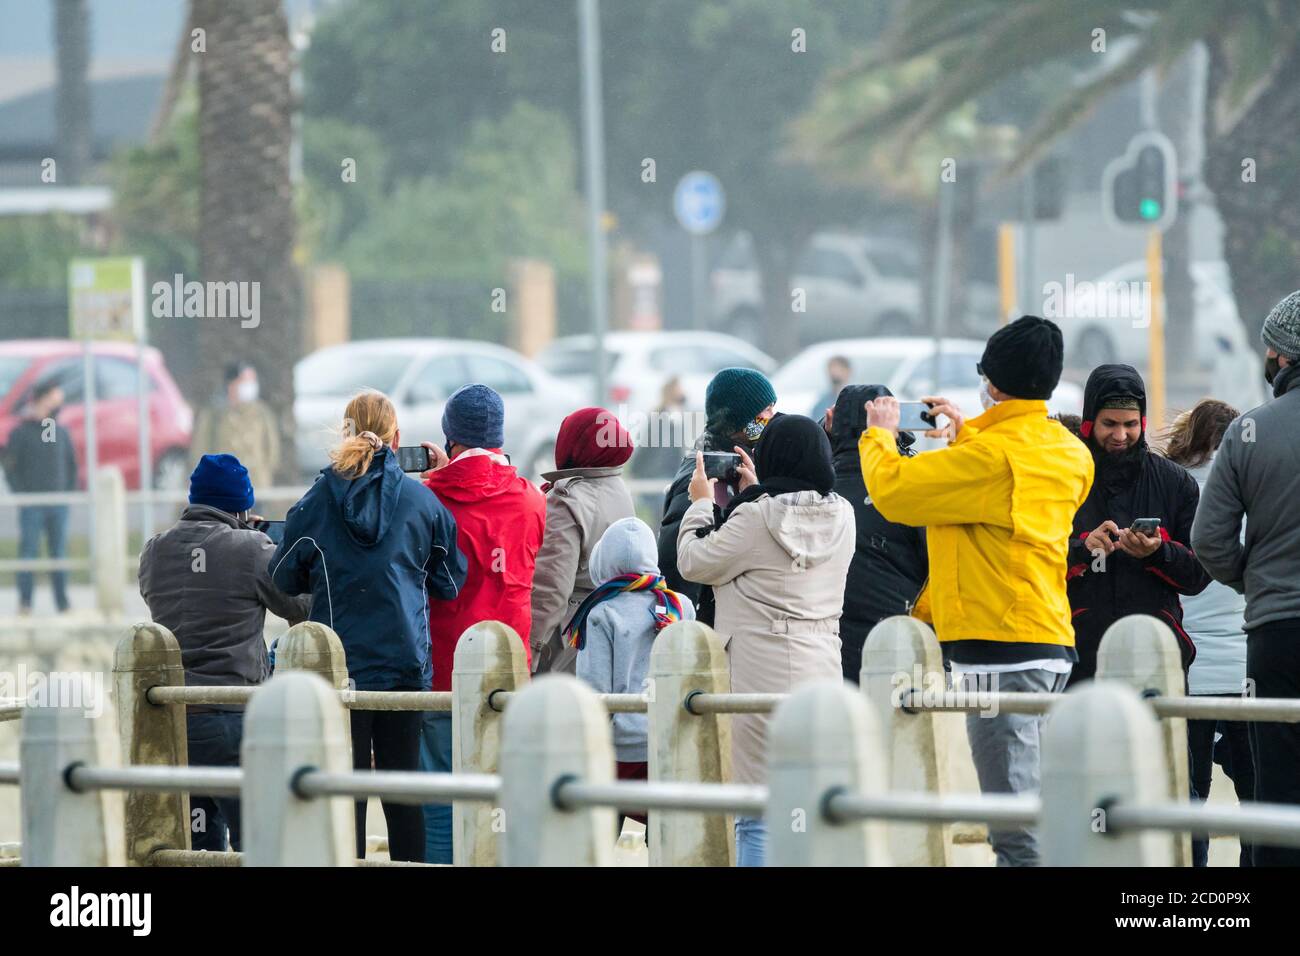 Gruppo di persone vestite di abbigliamento invernale che fotografano un evento meteorologico durante una tempesta a Città del Capo, Sud Africa Concept clima e stagioni Foto Stock